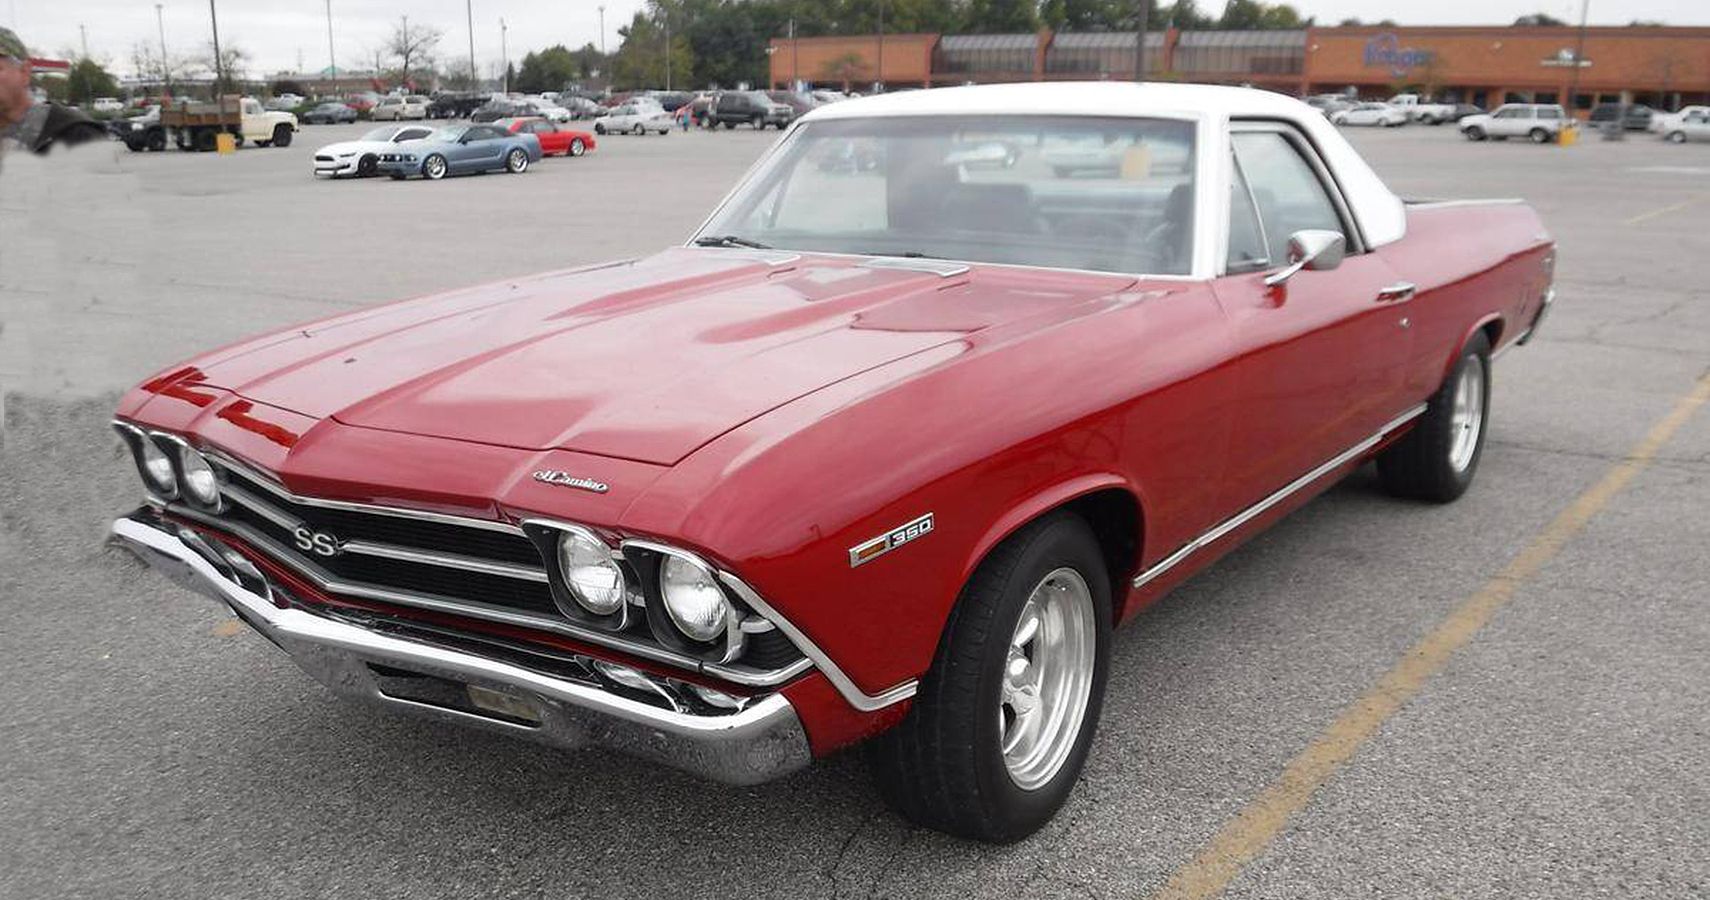 1969 Chevrolet El Camino: $19,500